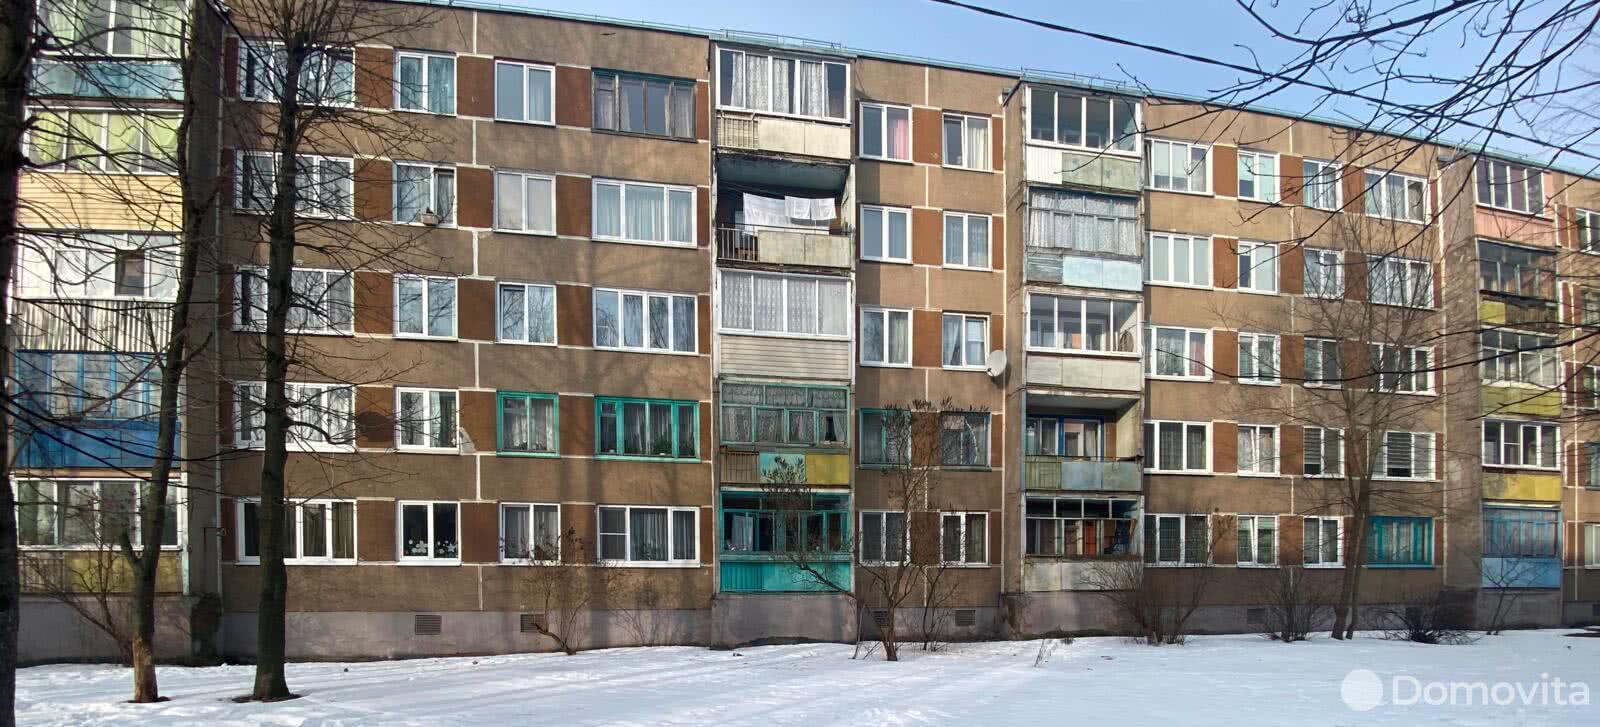 Стоимость продажи квартиры, Могилев, ул. Крупской, д. 188